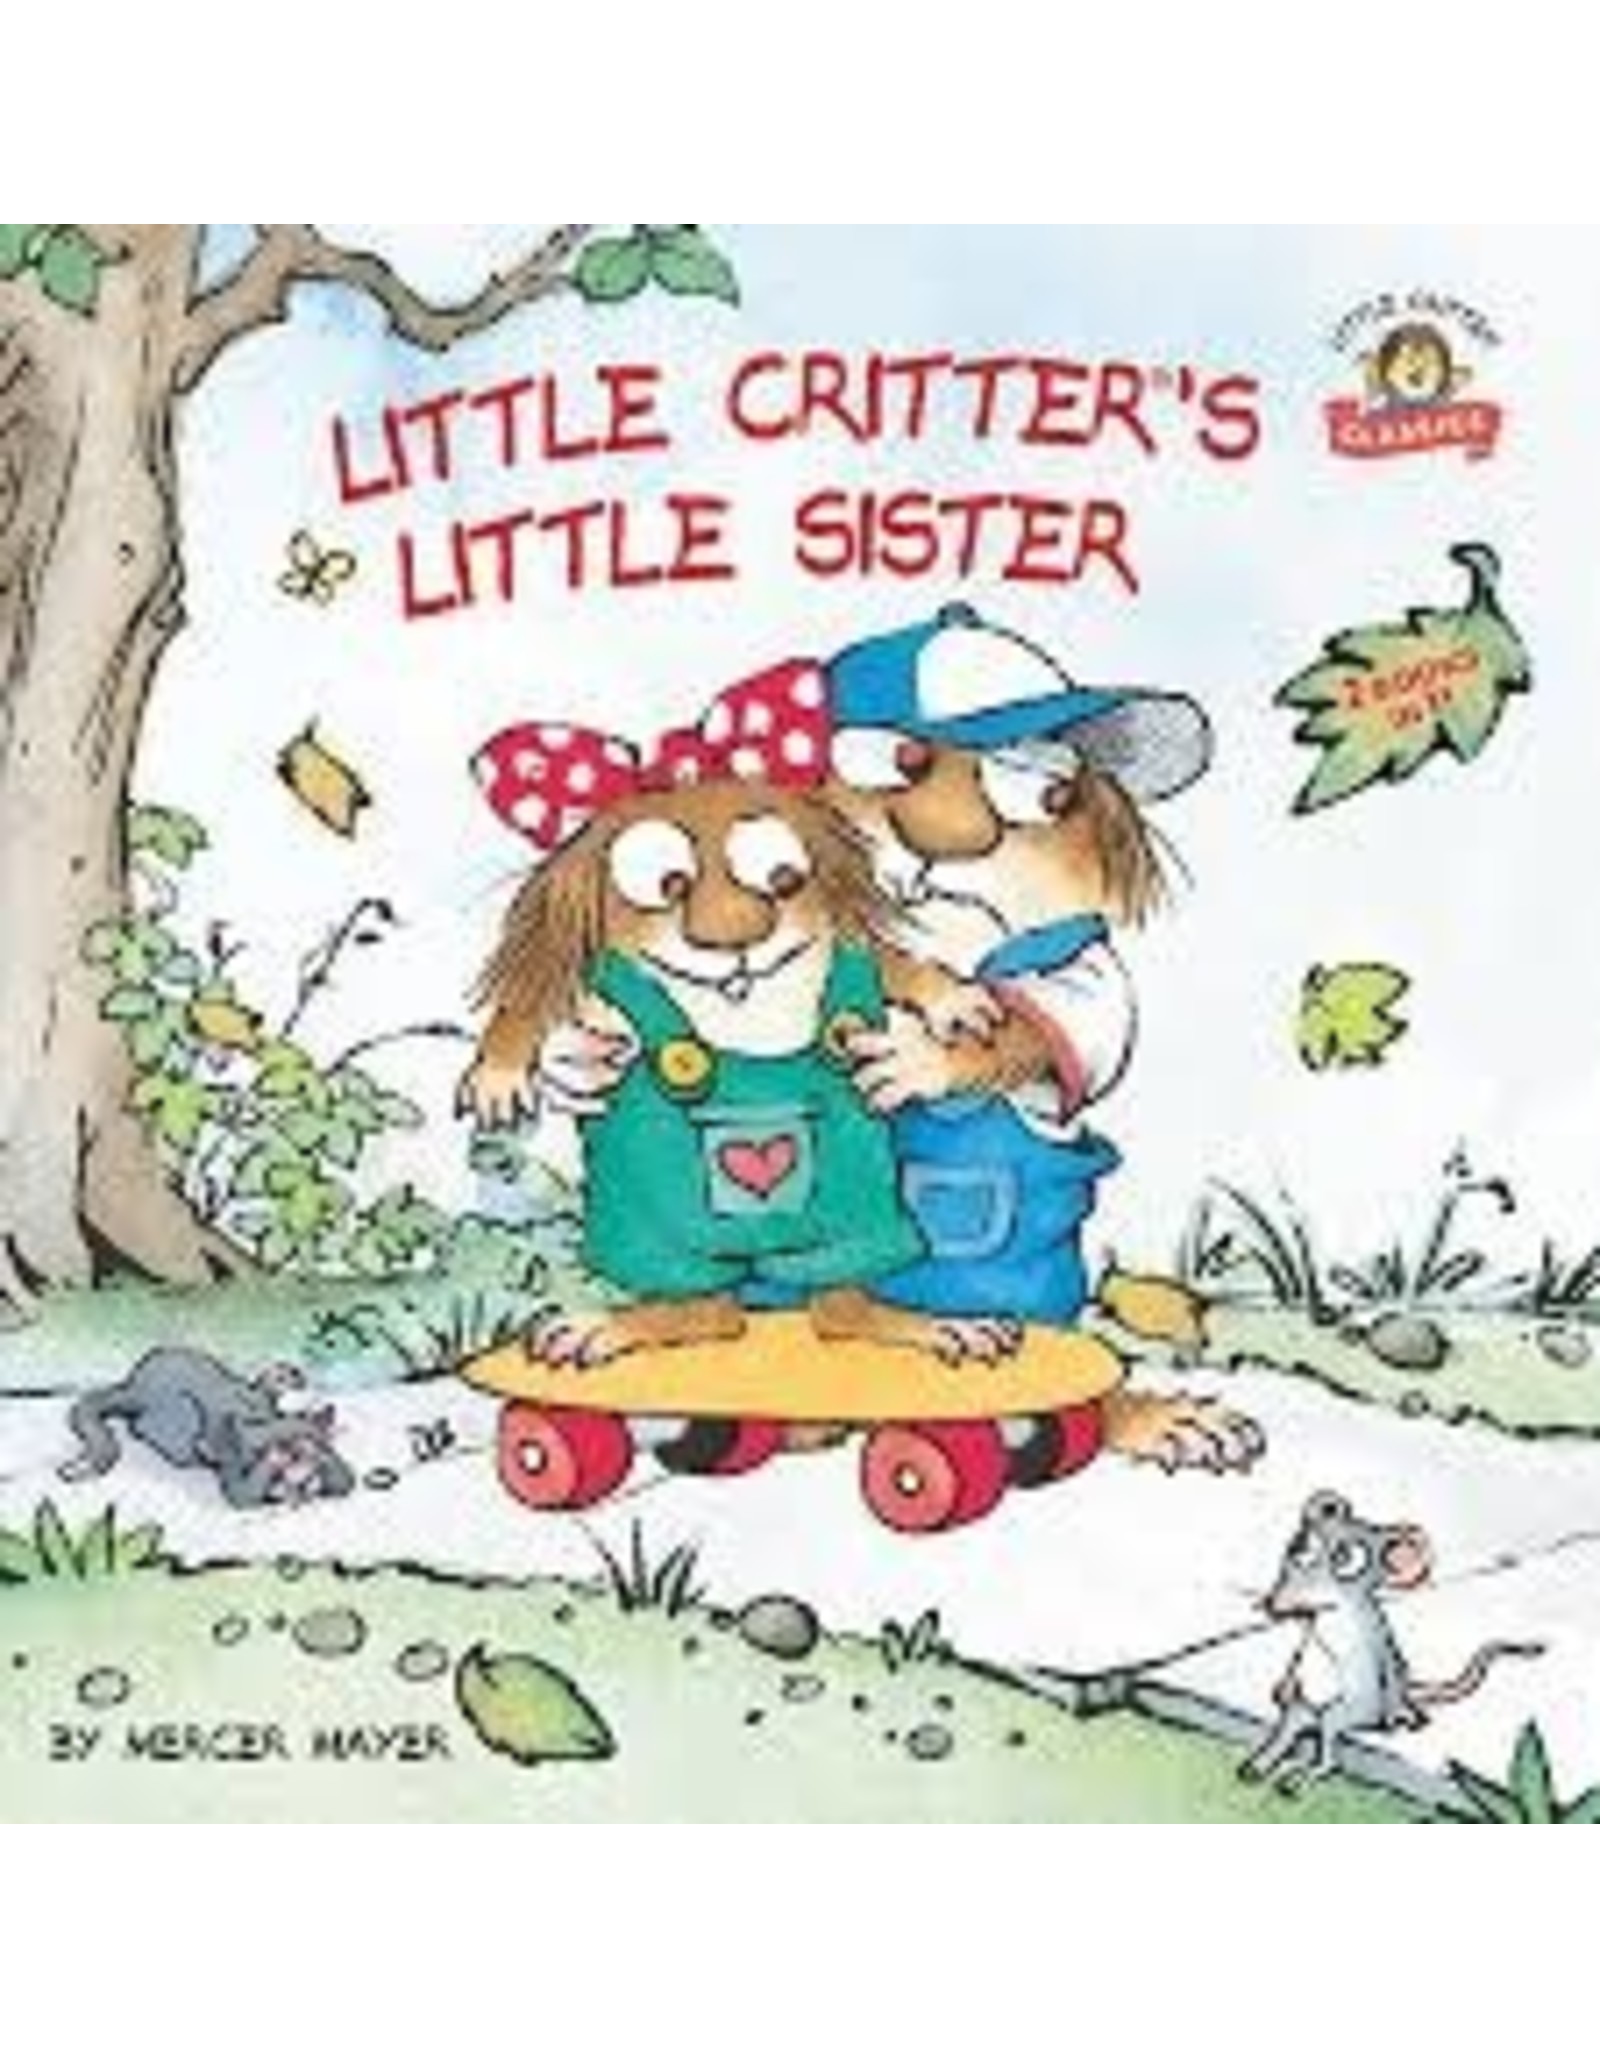 Little Critters Little Sister - Mercer Mayer